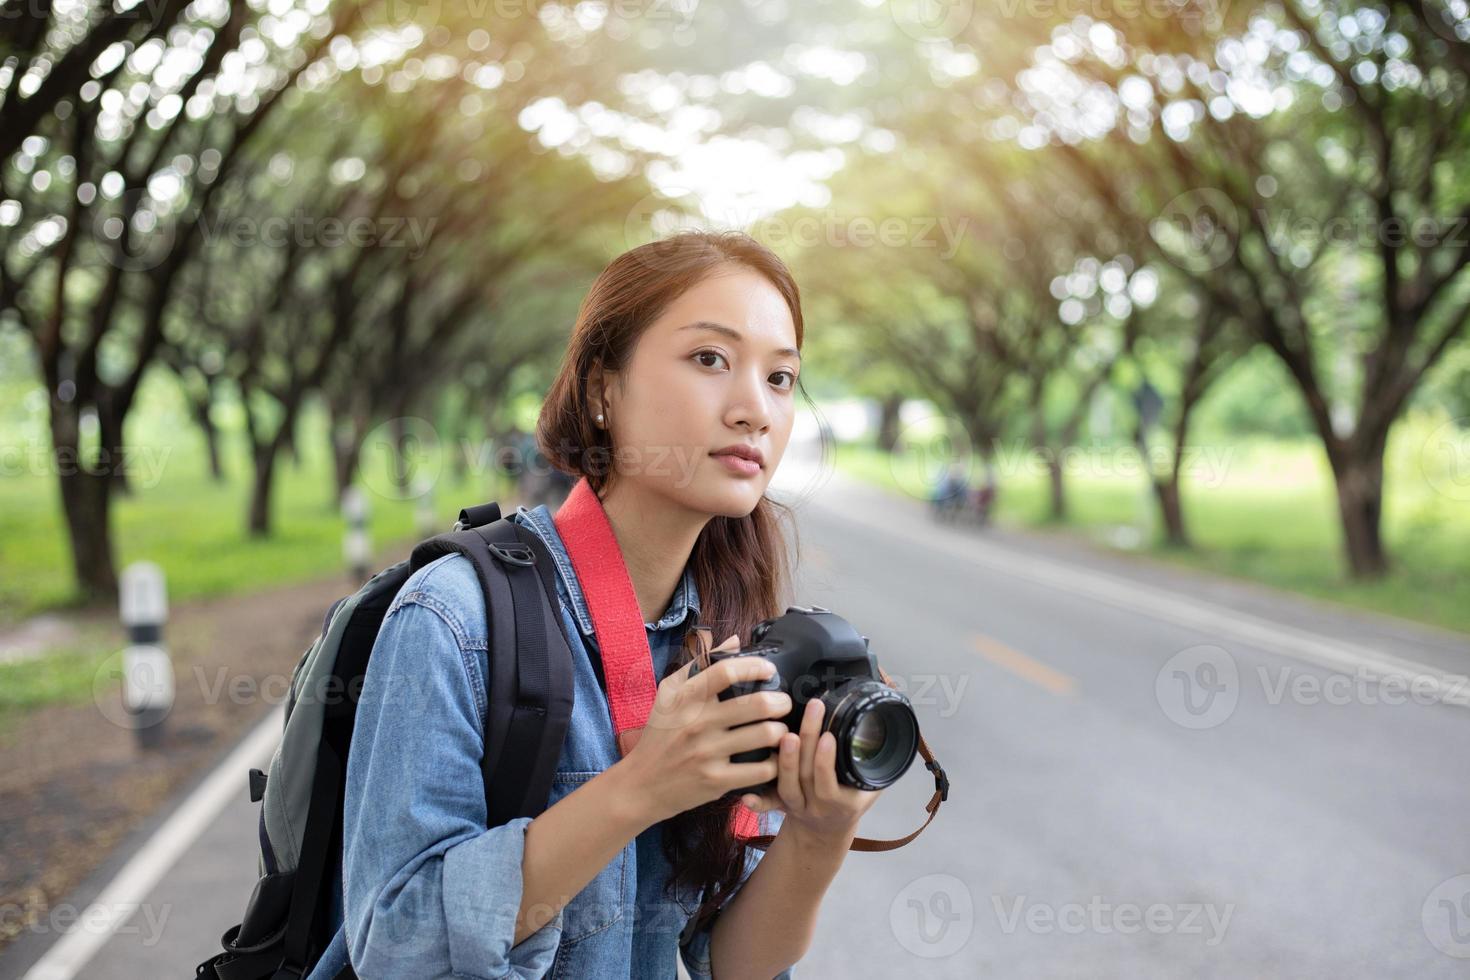 kvinnlig fotograf som håller en kamera i det vilda för att ta ett foto av turistresenären